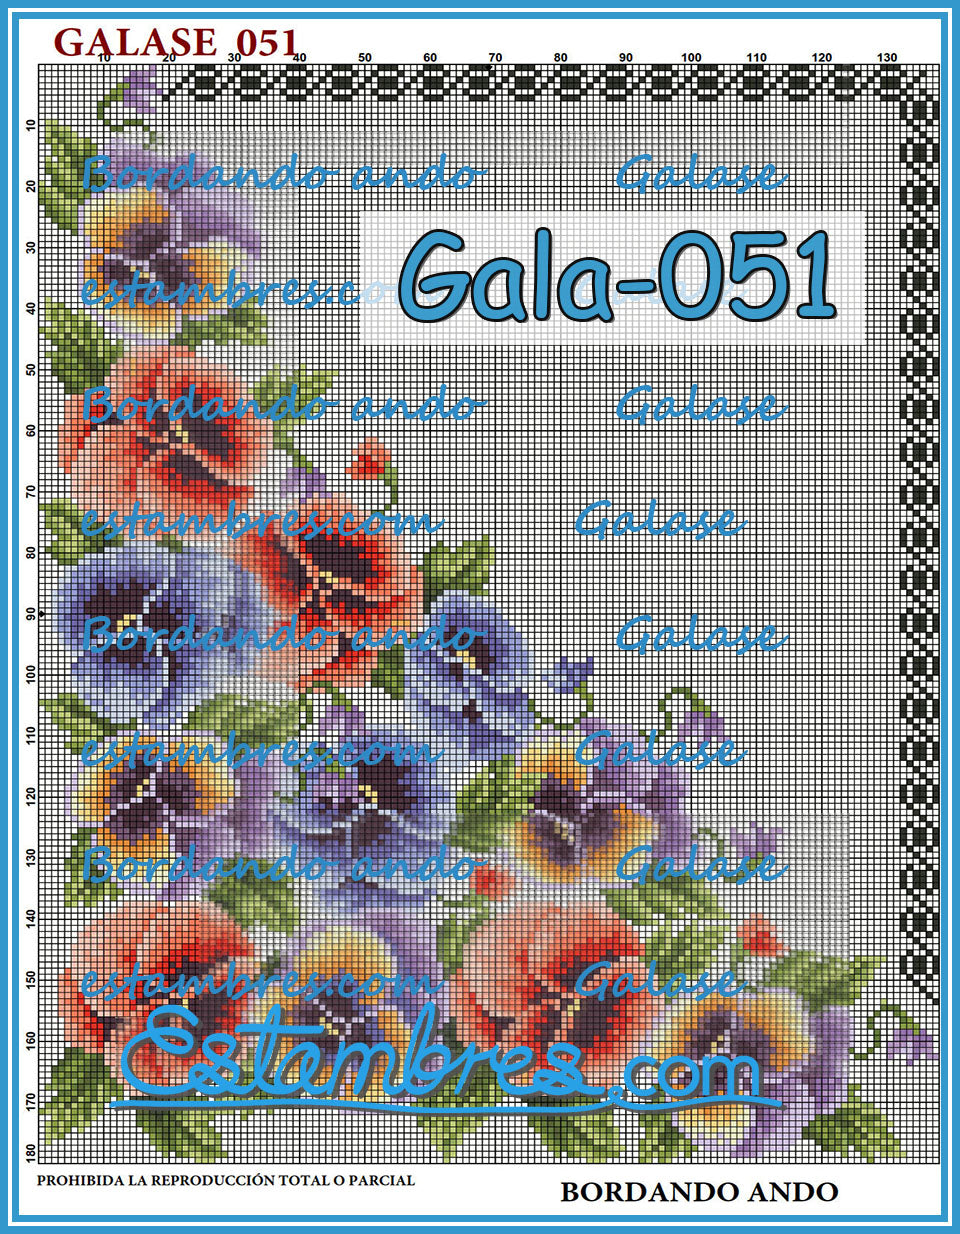 GALASE [001-070] - 1 of 5